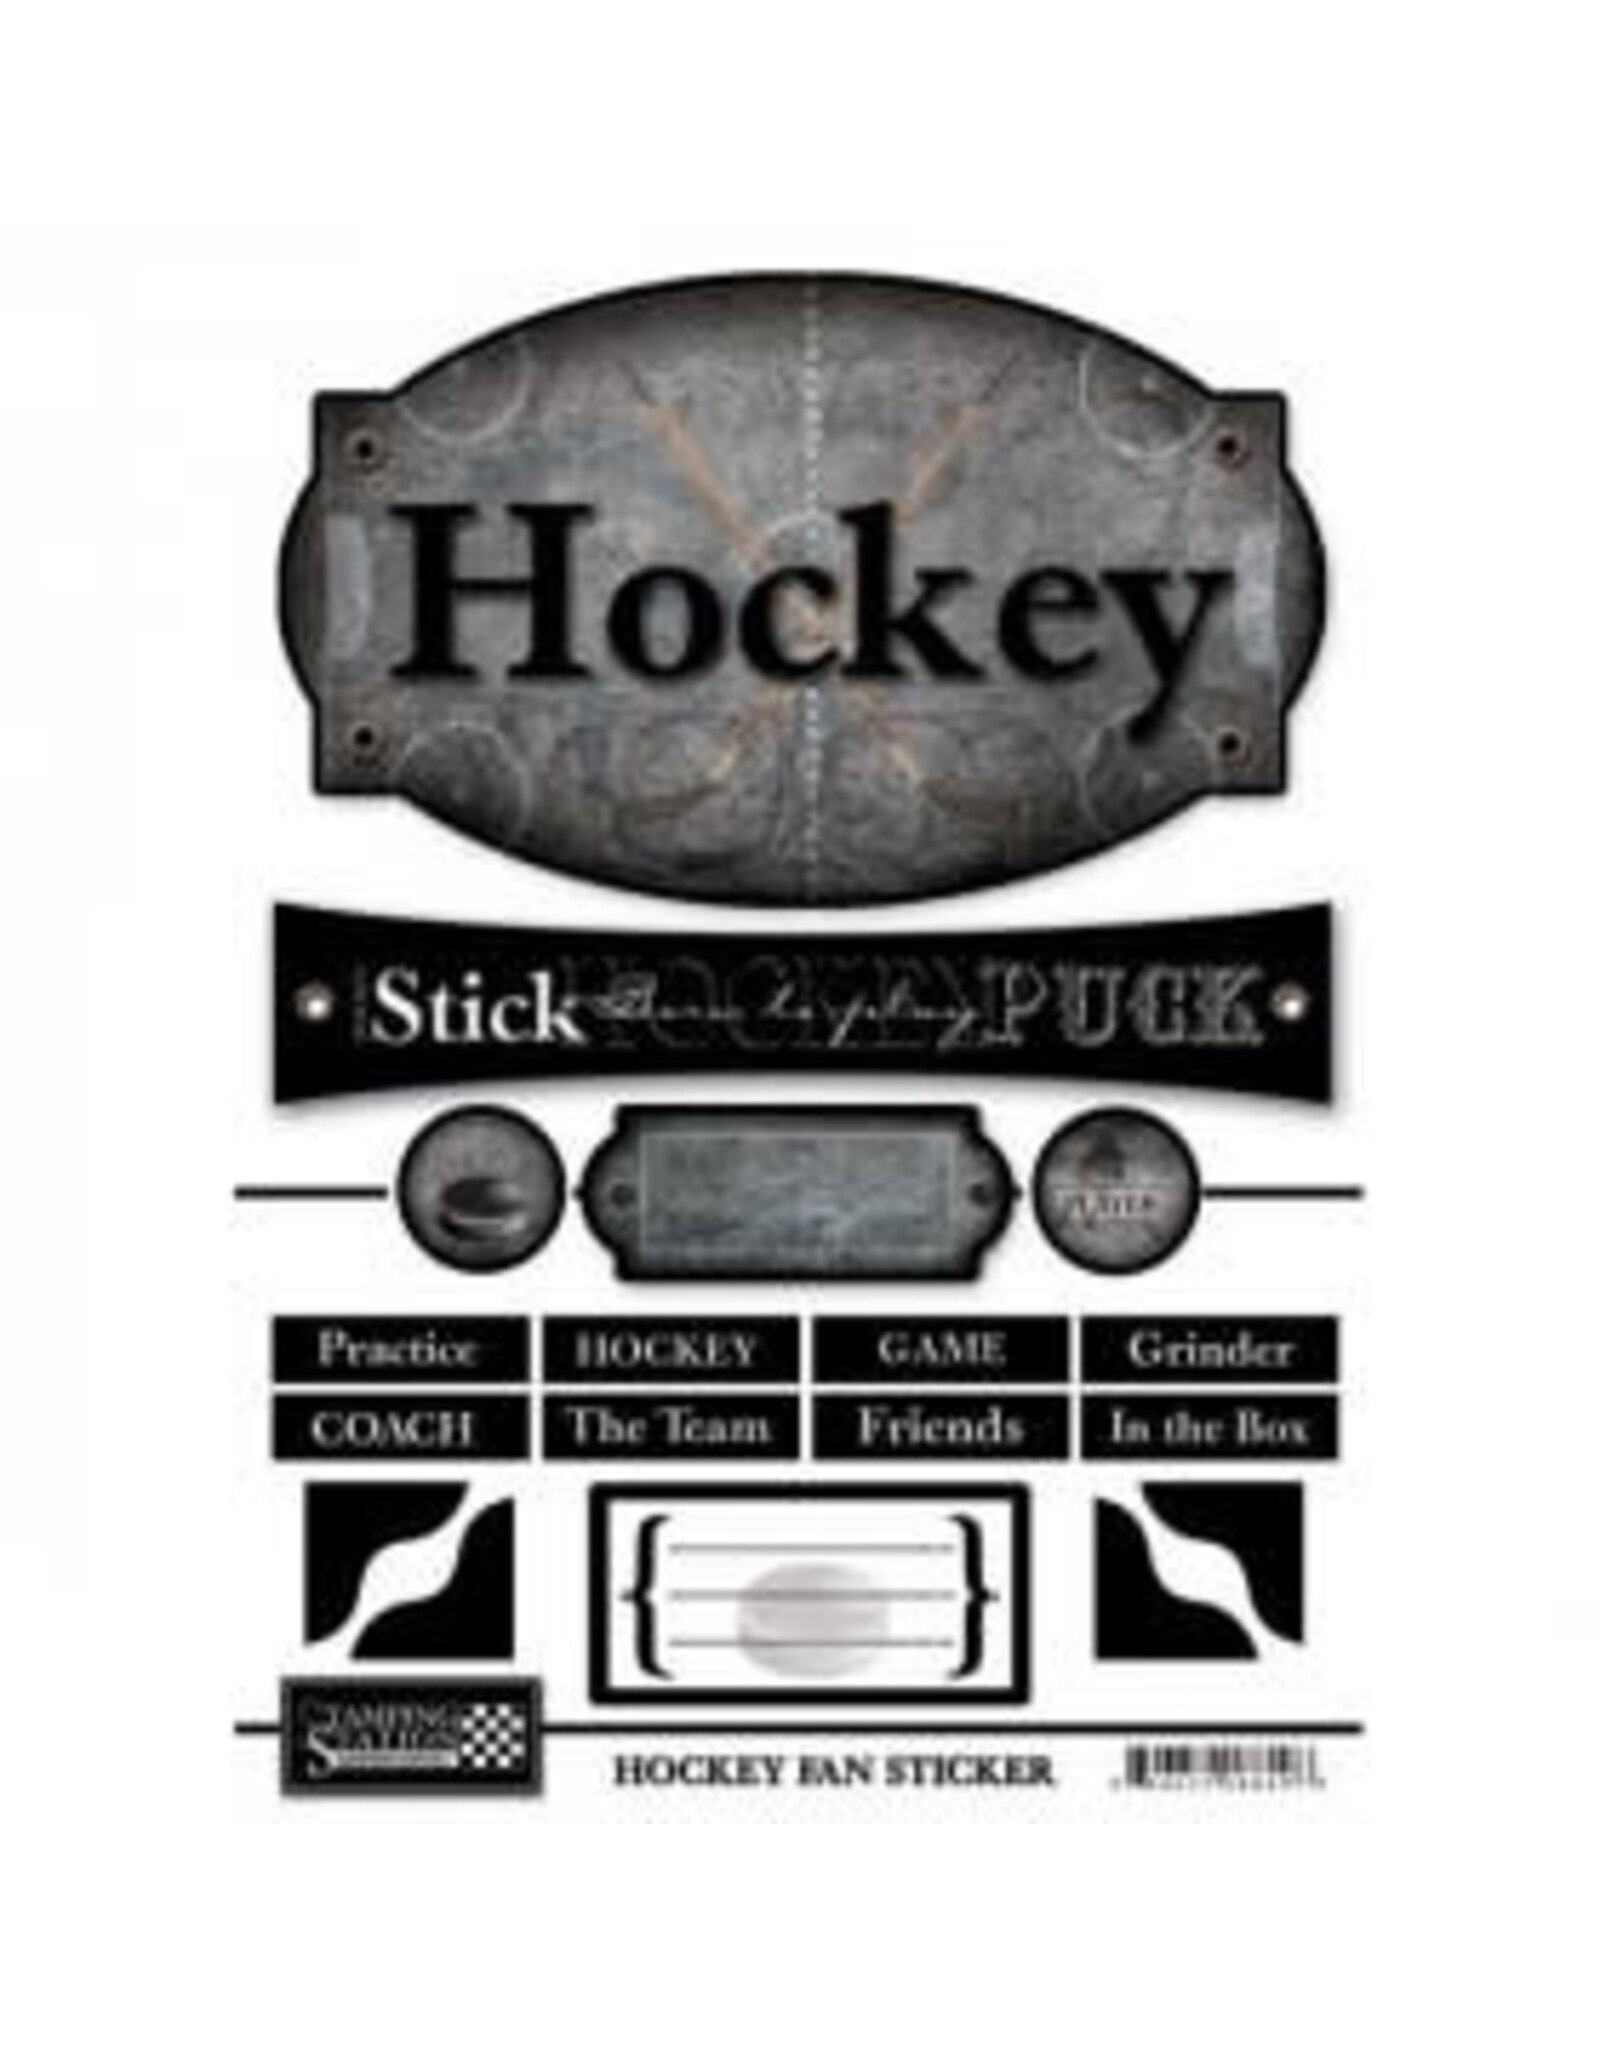 Hockey fan stickers